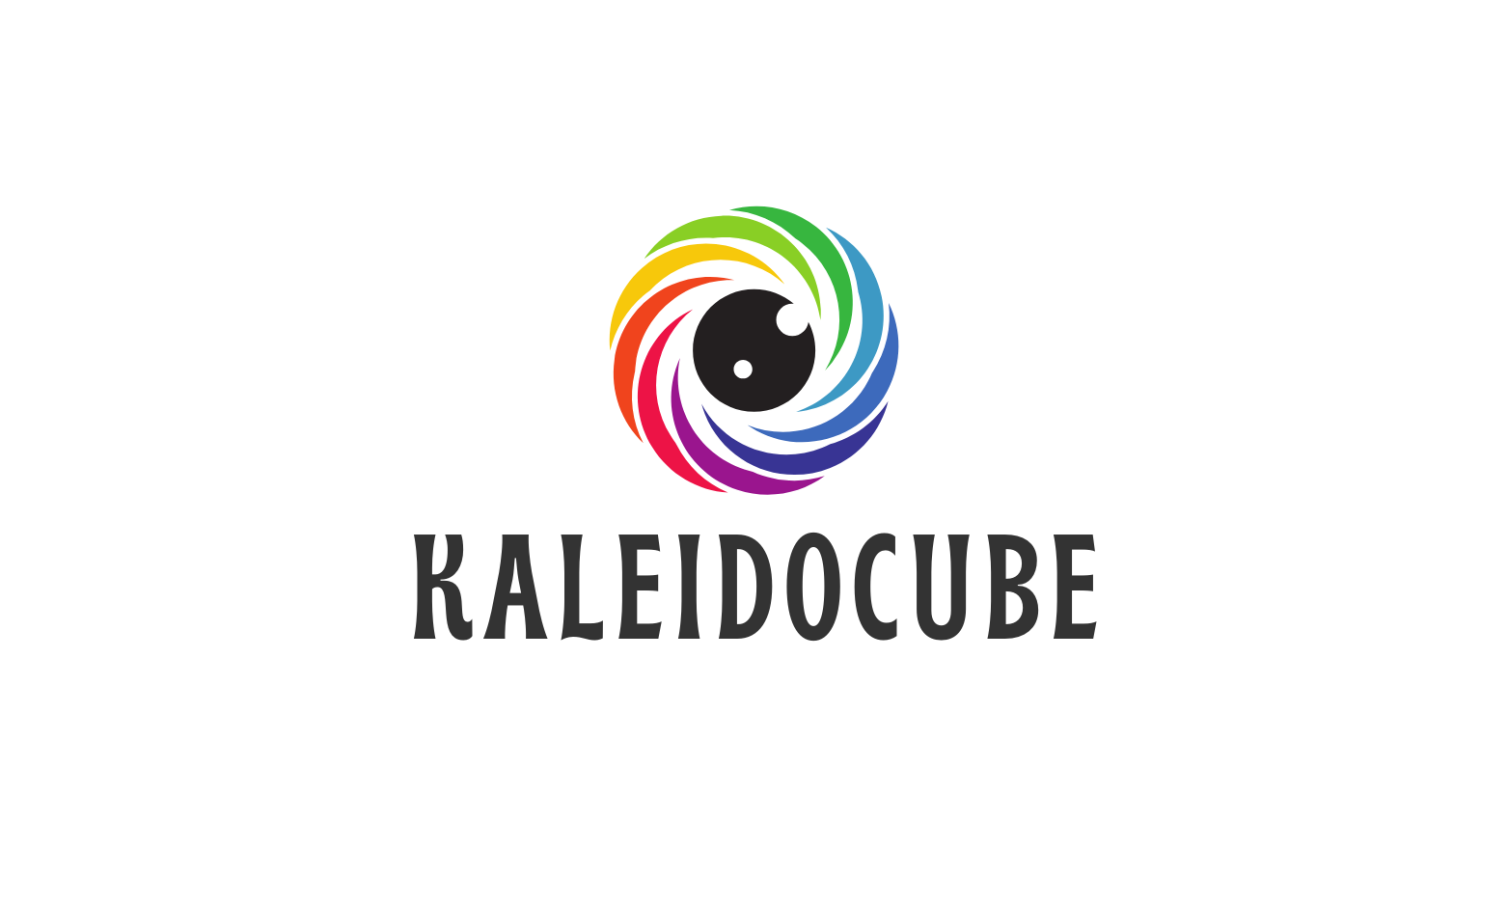 Kaleidocube.com